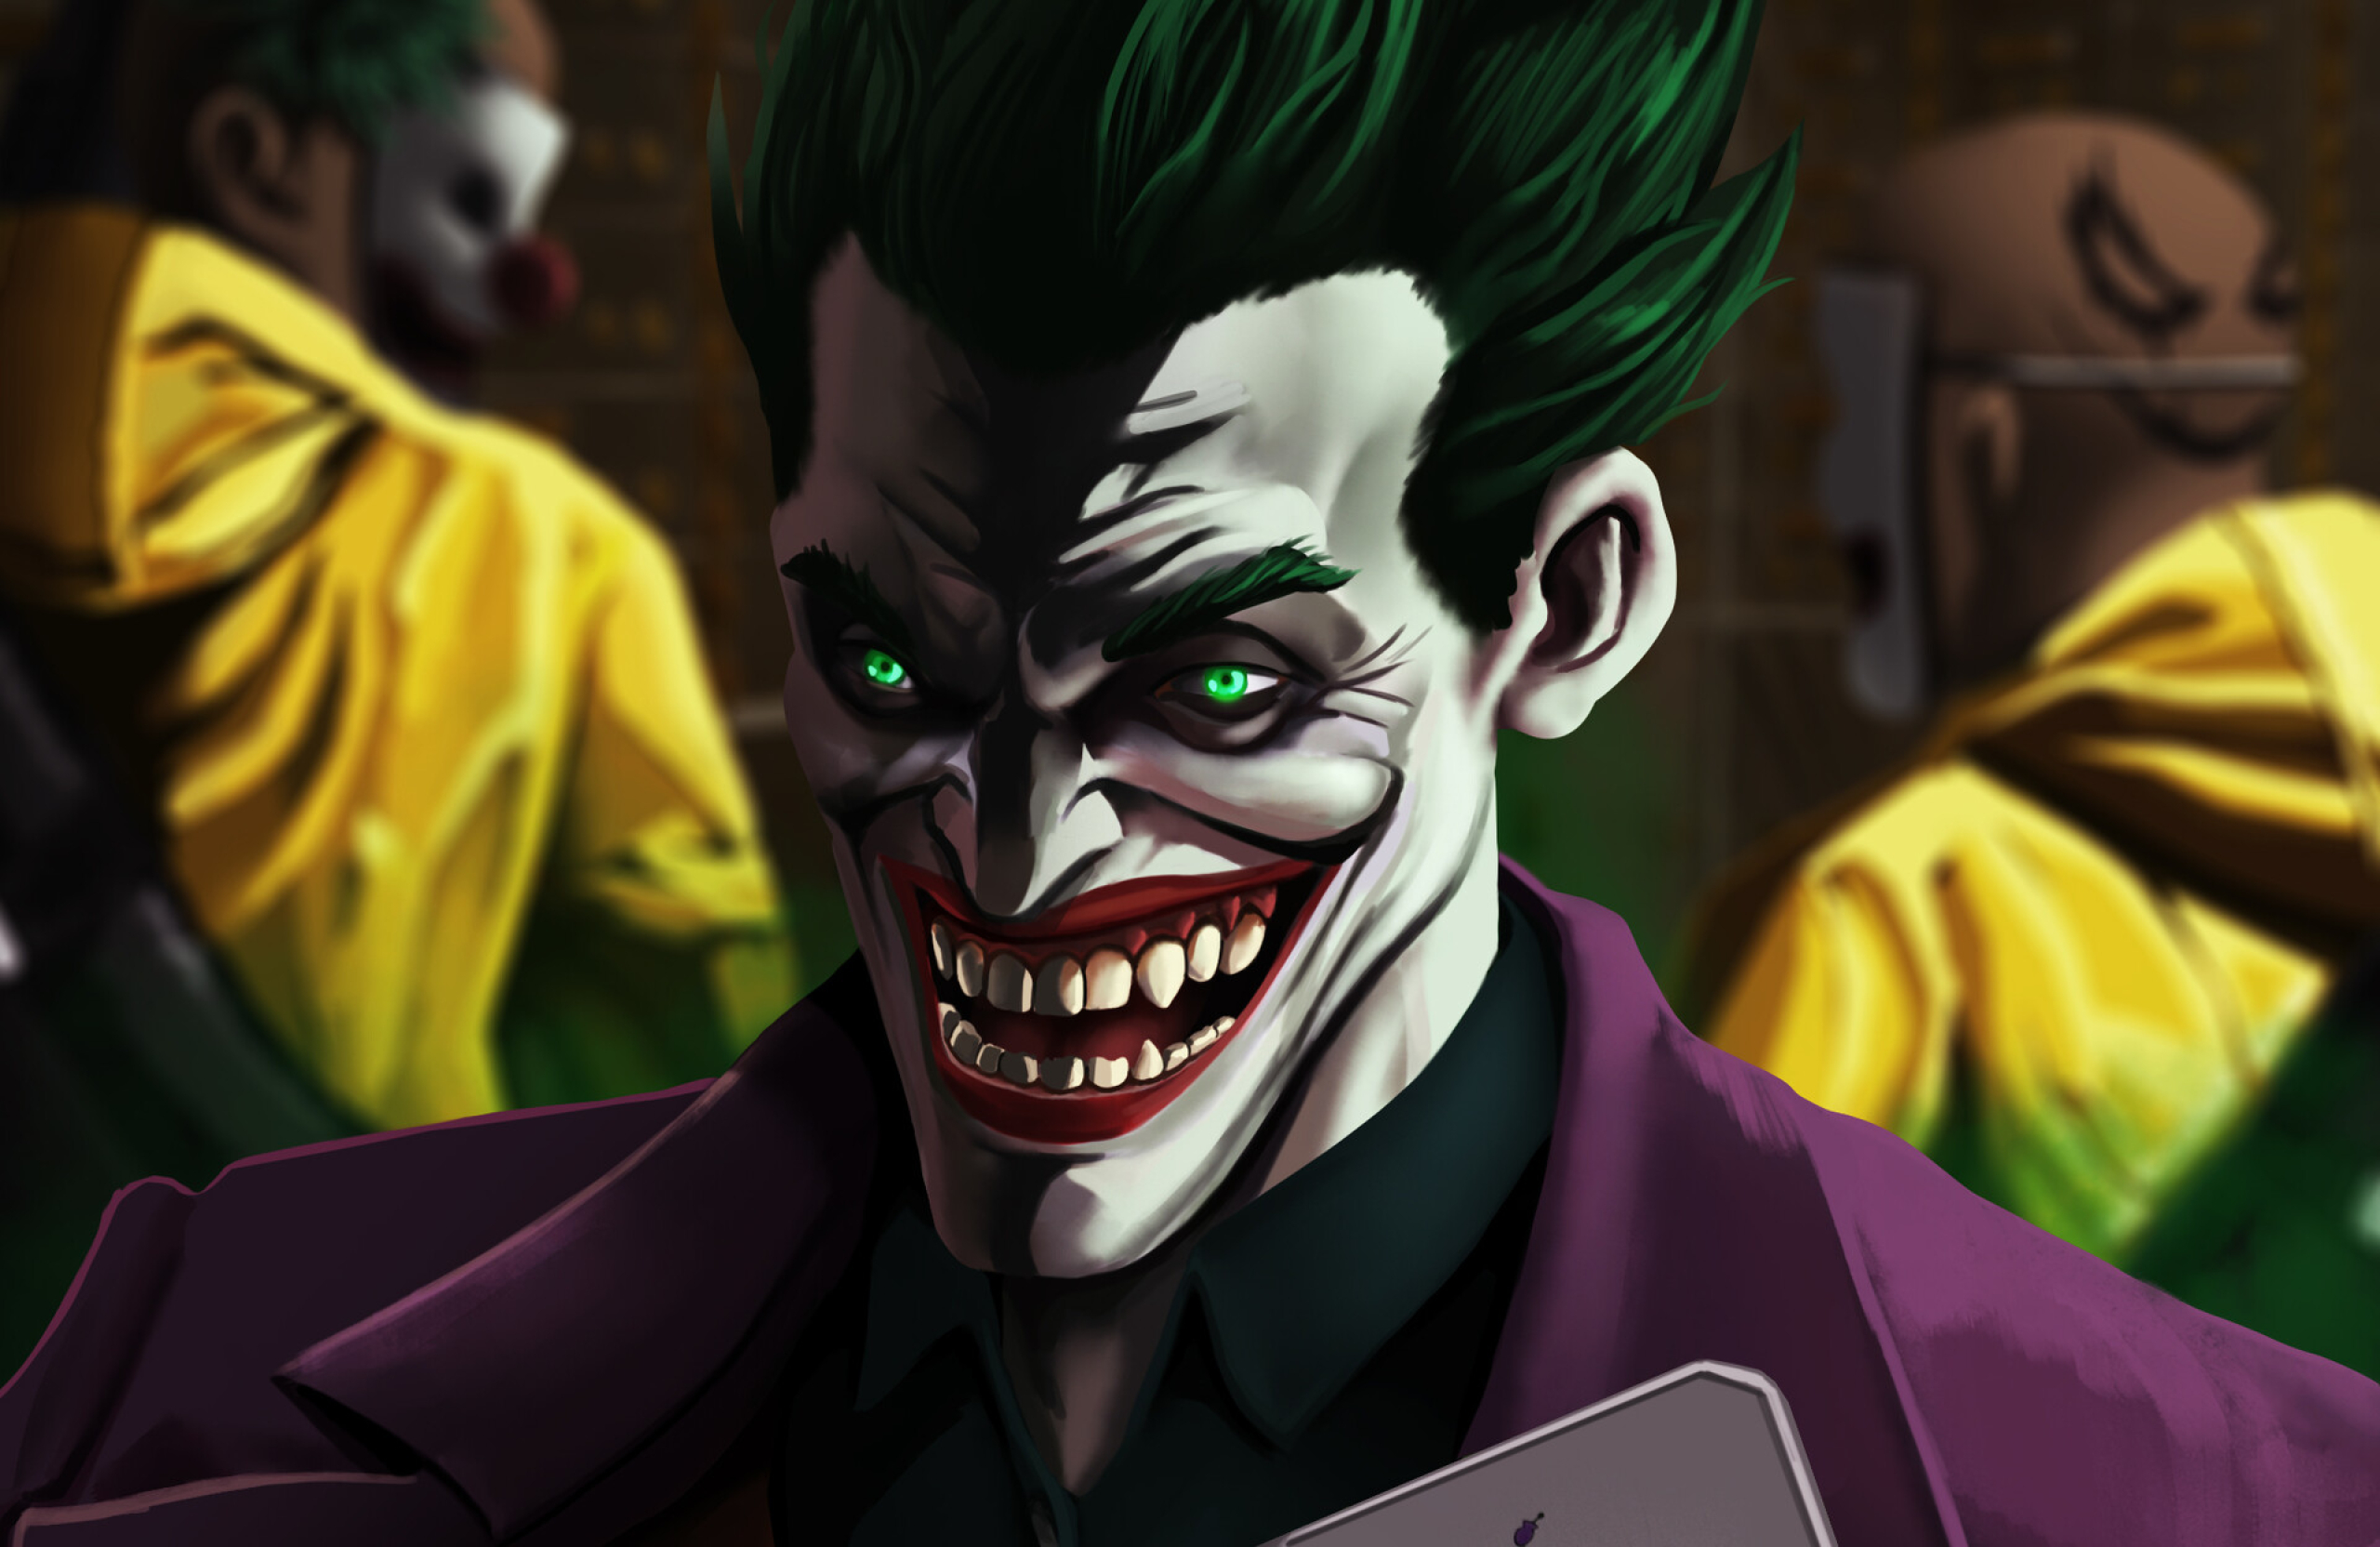 2560x1664 Resolution An Evil Joker Laugh 2560x1664 Resolution Wallpaper ...